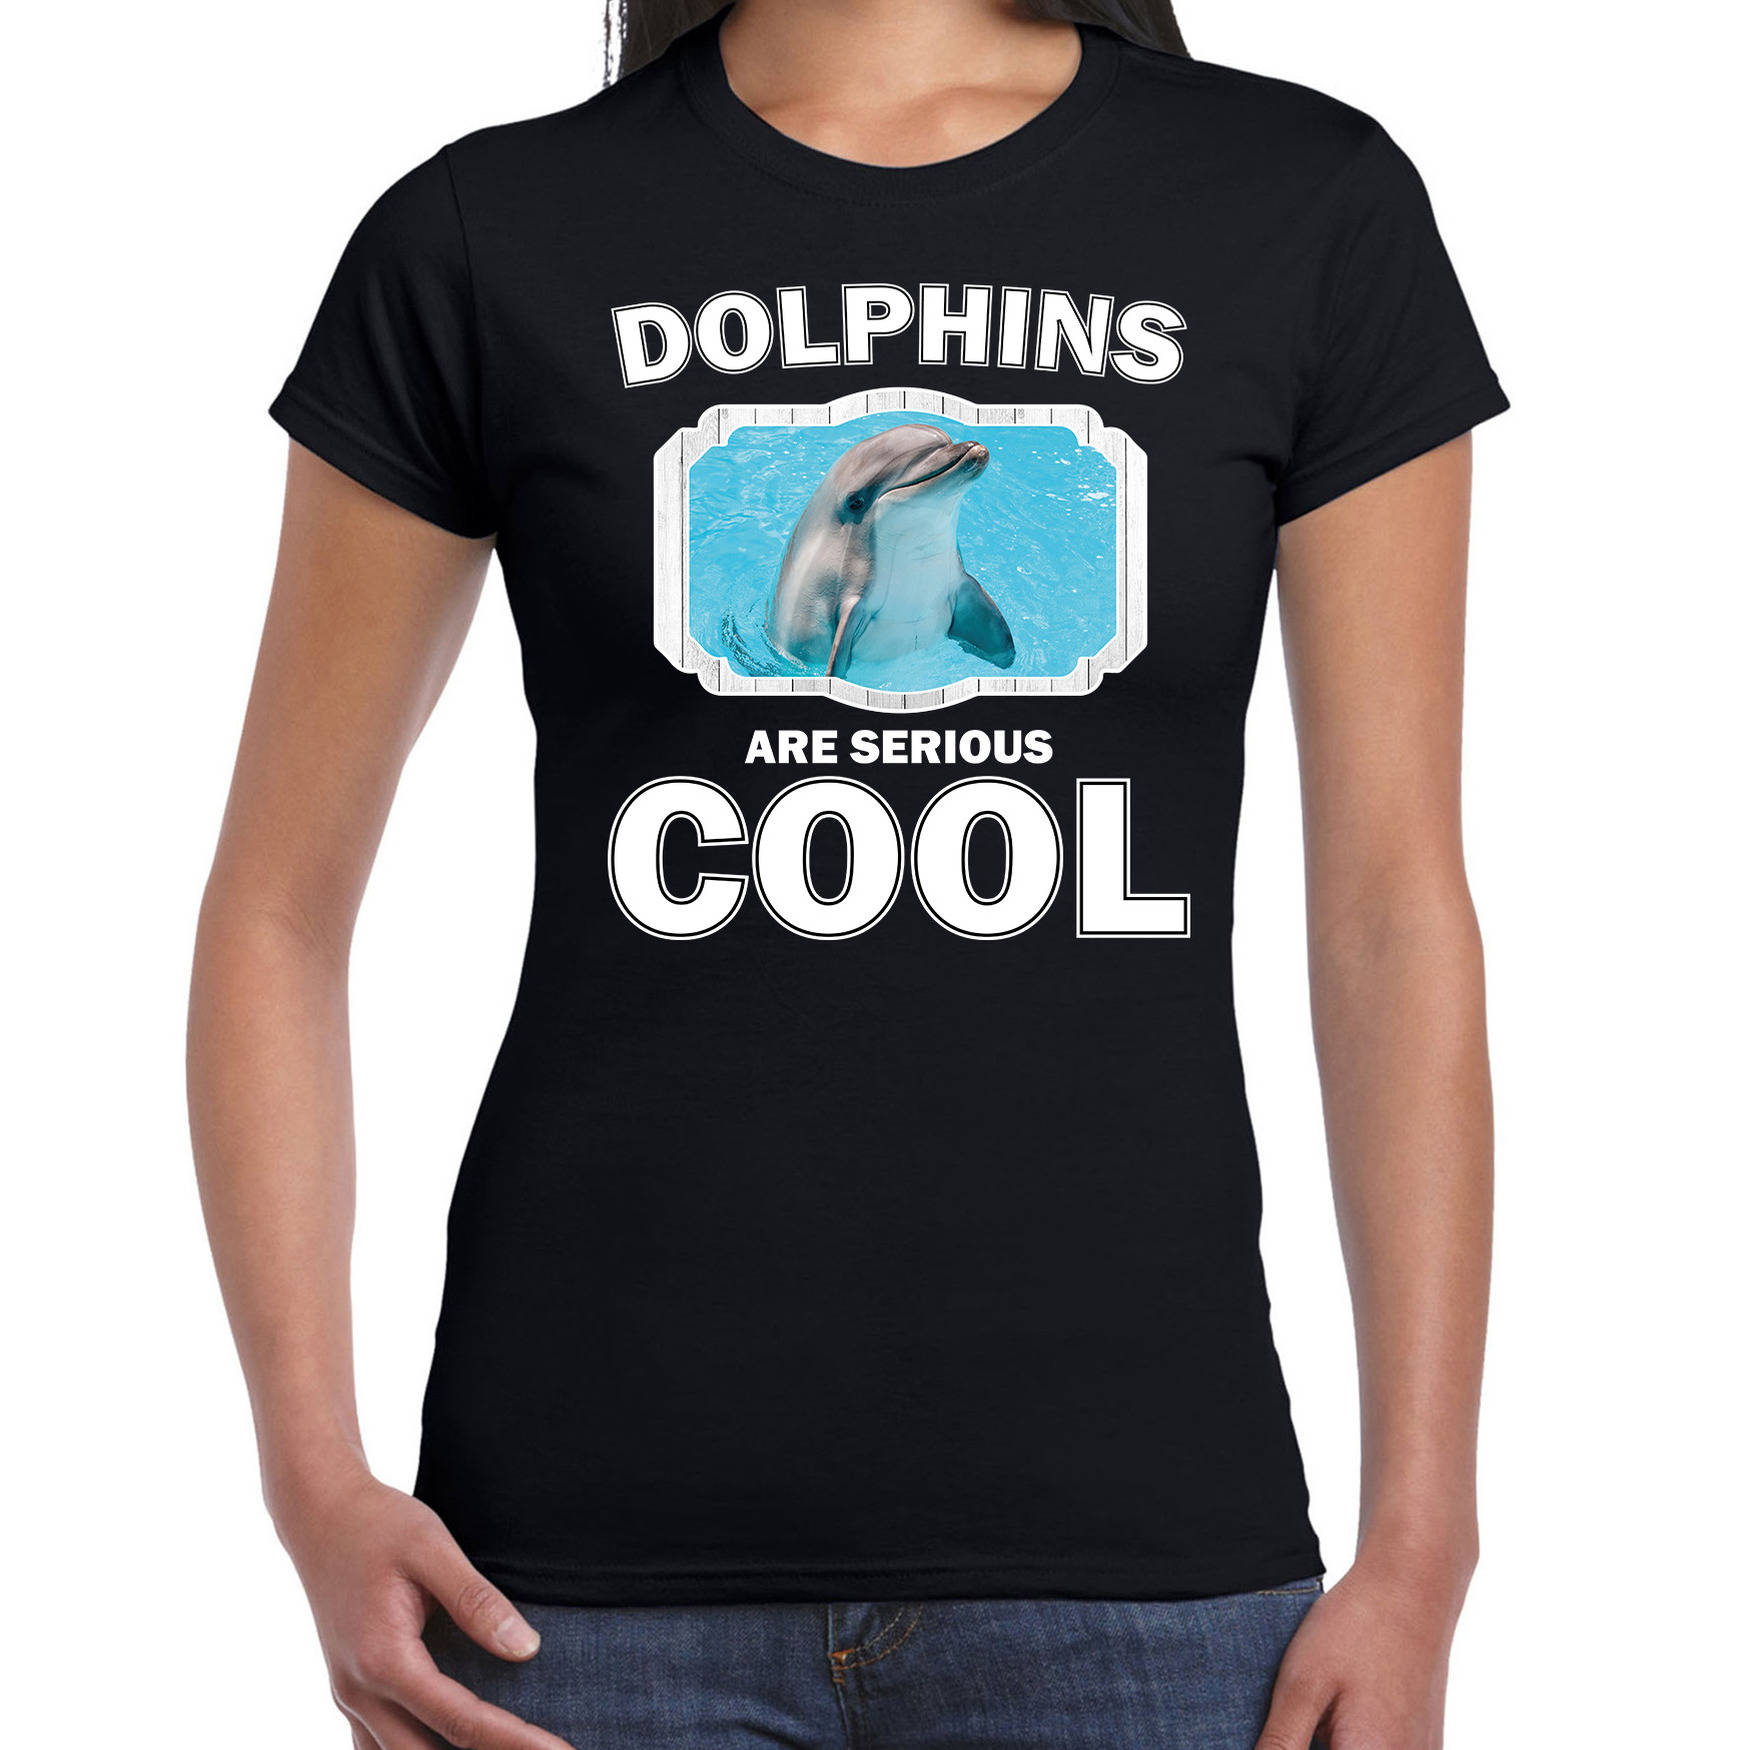 Dieren dolfijn t-shirt zwart dames - dolphins are cool shirt